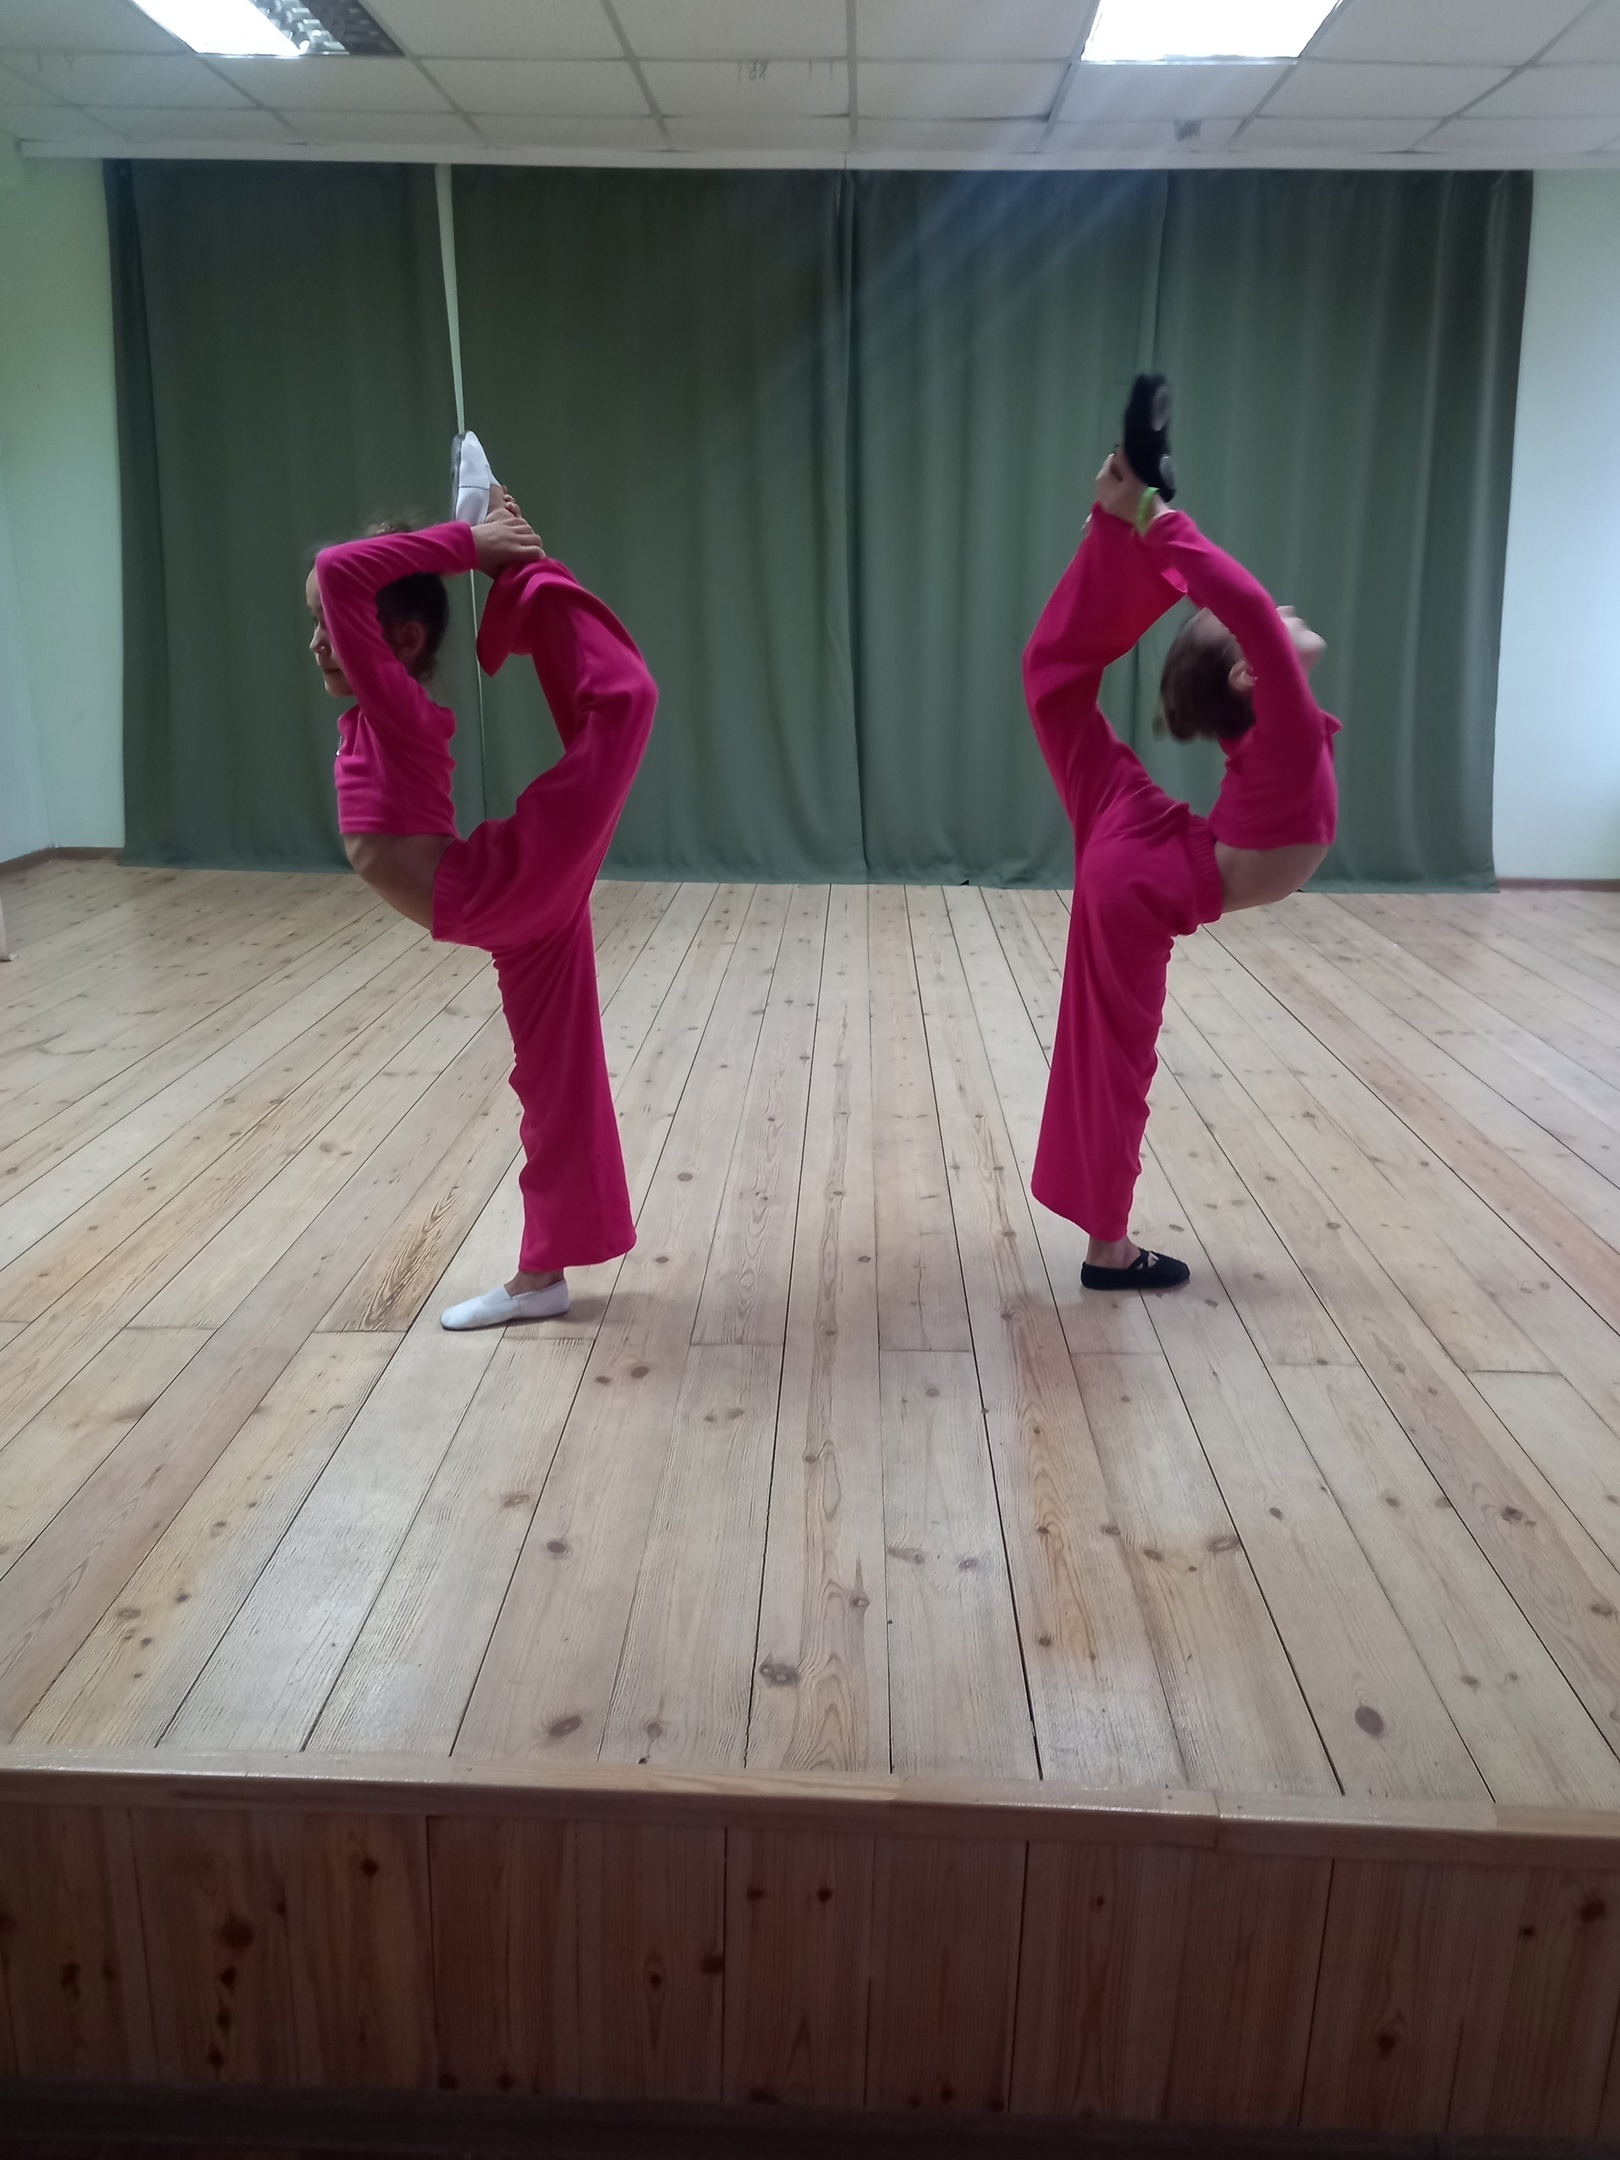 20 ноября в младшей группе танцевальной студии "PROдвижение" прошёл открытый урок по хореографии